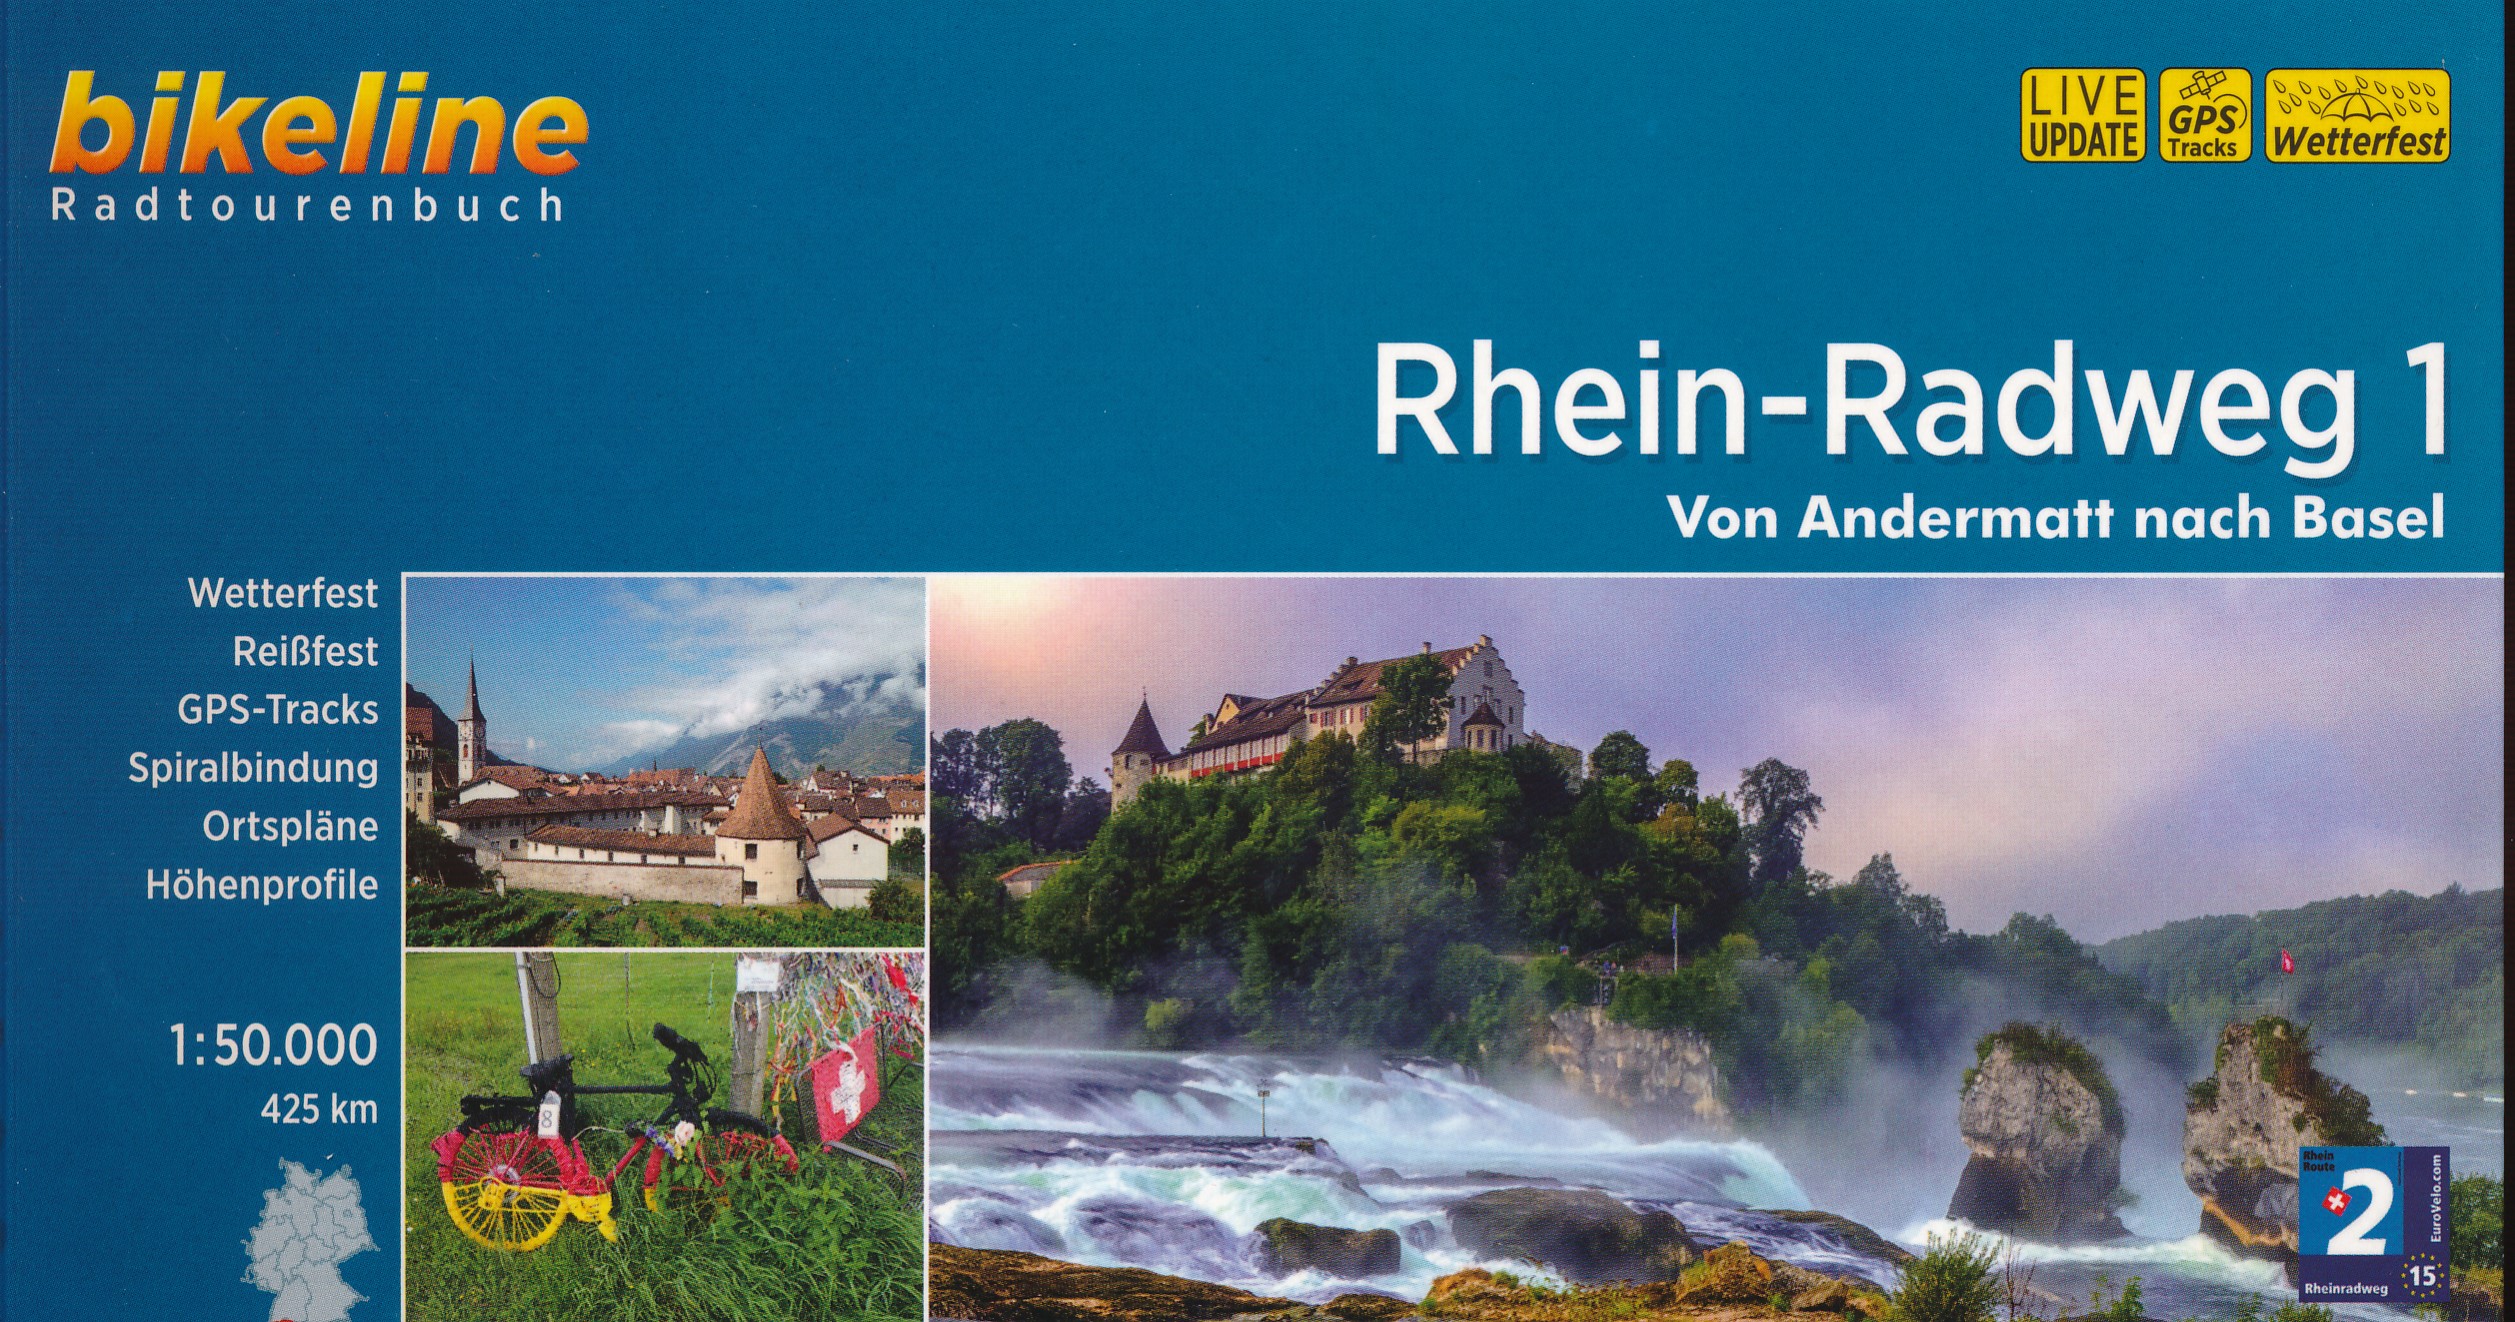 Online bestellen: Fietsgids Bikeline Rhein radweg 1 (Zwitserland: Andermat - Basel) | Esterbauer